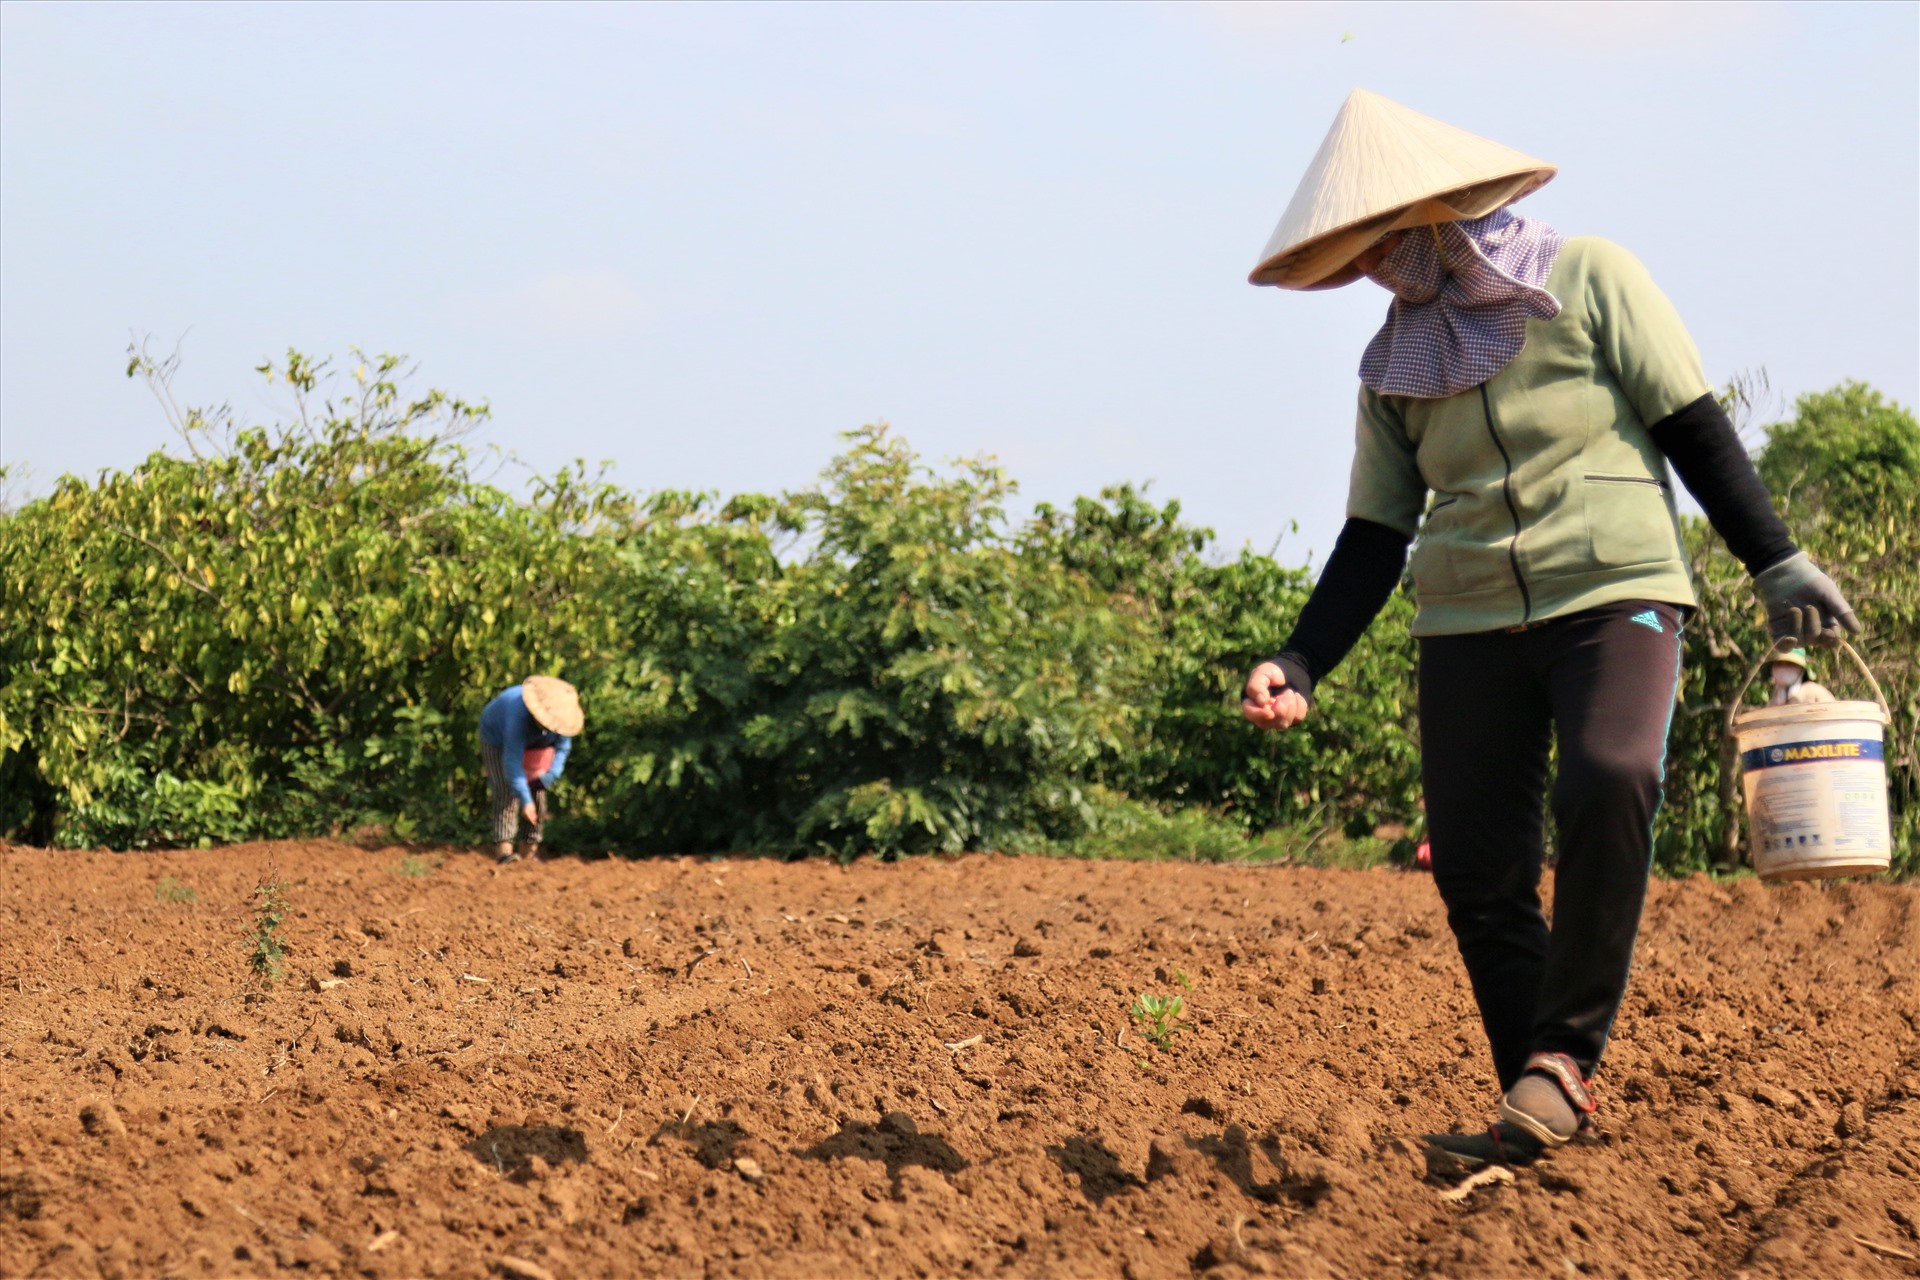 Người dân xã Ea Phê, huyện Krông Pắc, tỉnh Đắk Lắk trở lại cánh đồng làm việc sau 15 ngày cách ly xã hội. Ảnh: Bảo Trung